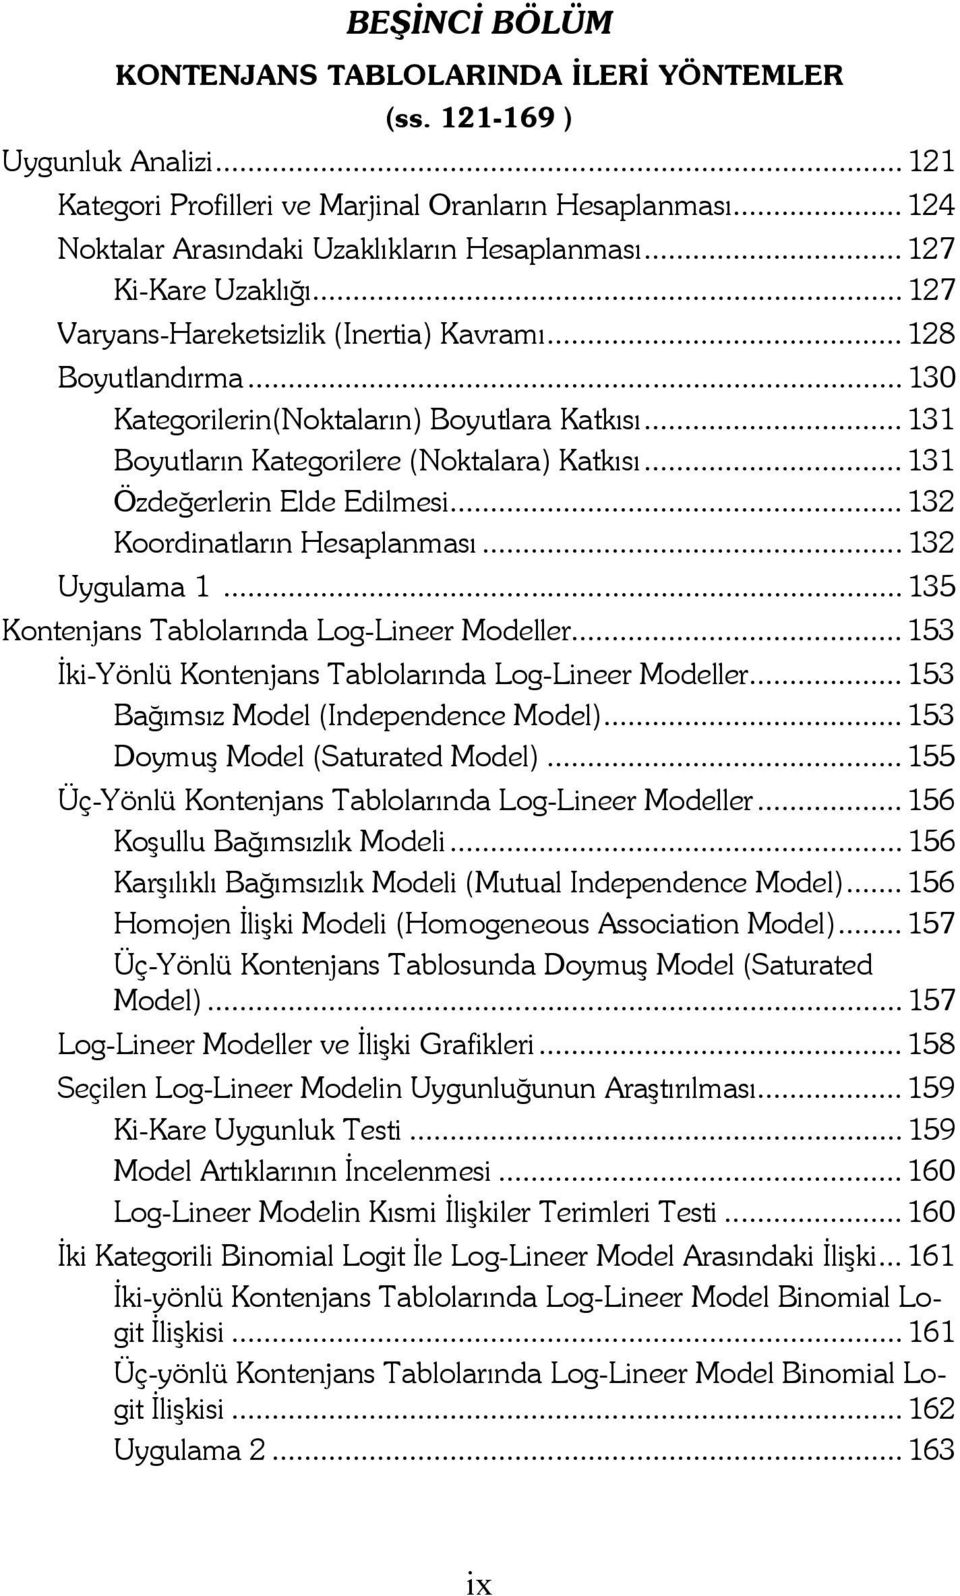 .. 131 Özdeğerlerin Elde Edilmesi... 132 Koordinatların Hesaplanması... 132 Uygulama 1... 135 Kontenjans Tablolarında Log-Lineer Modeller... 153 Đki-Yönlü Kontenjans Tablolarında Log-Lineer Modeller.